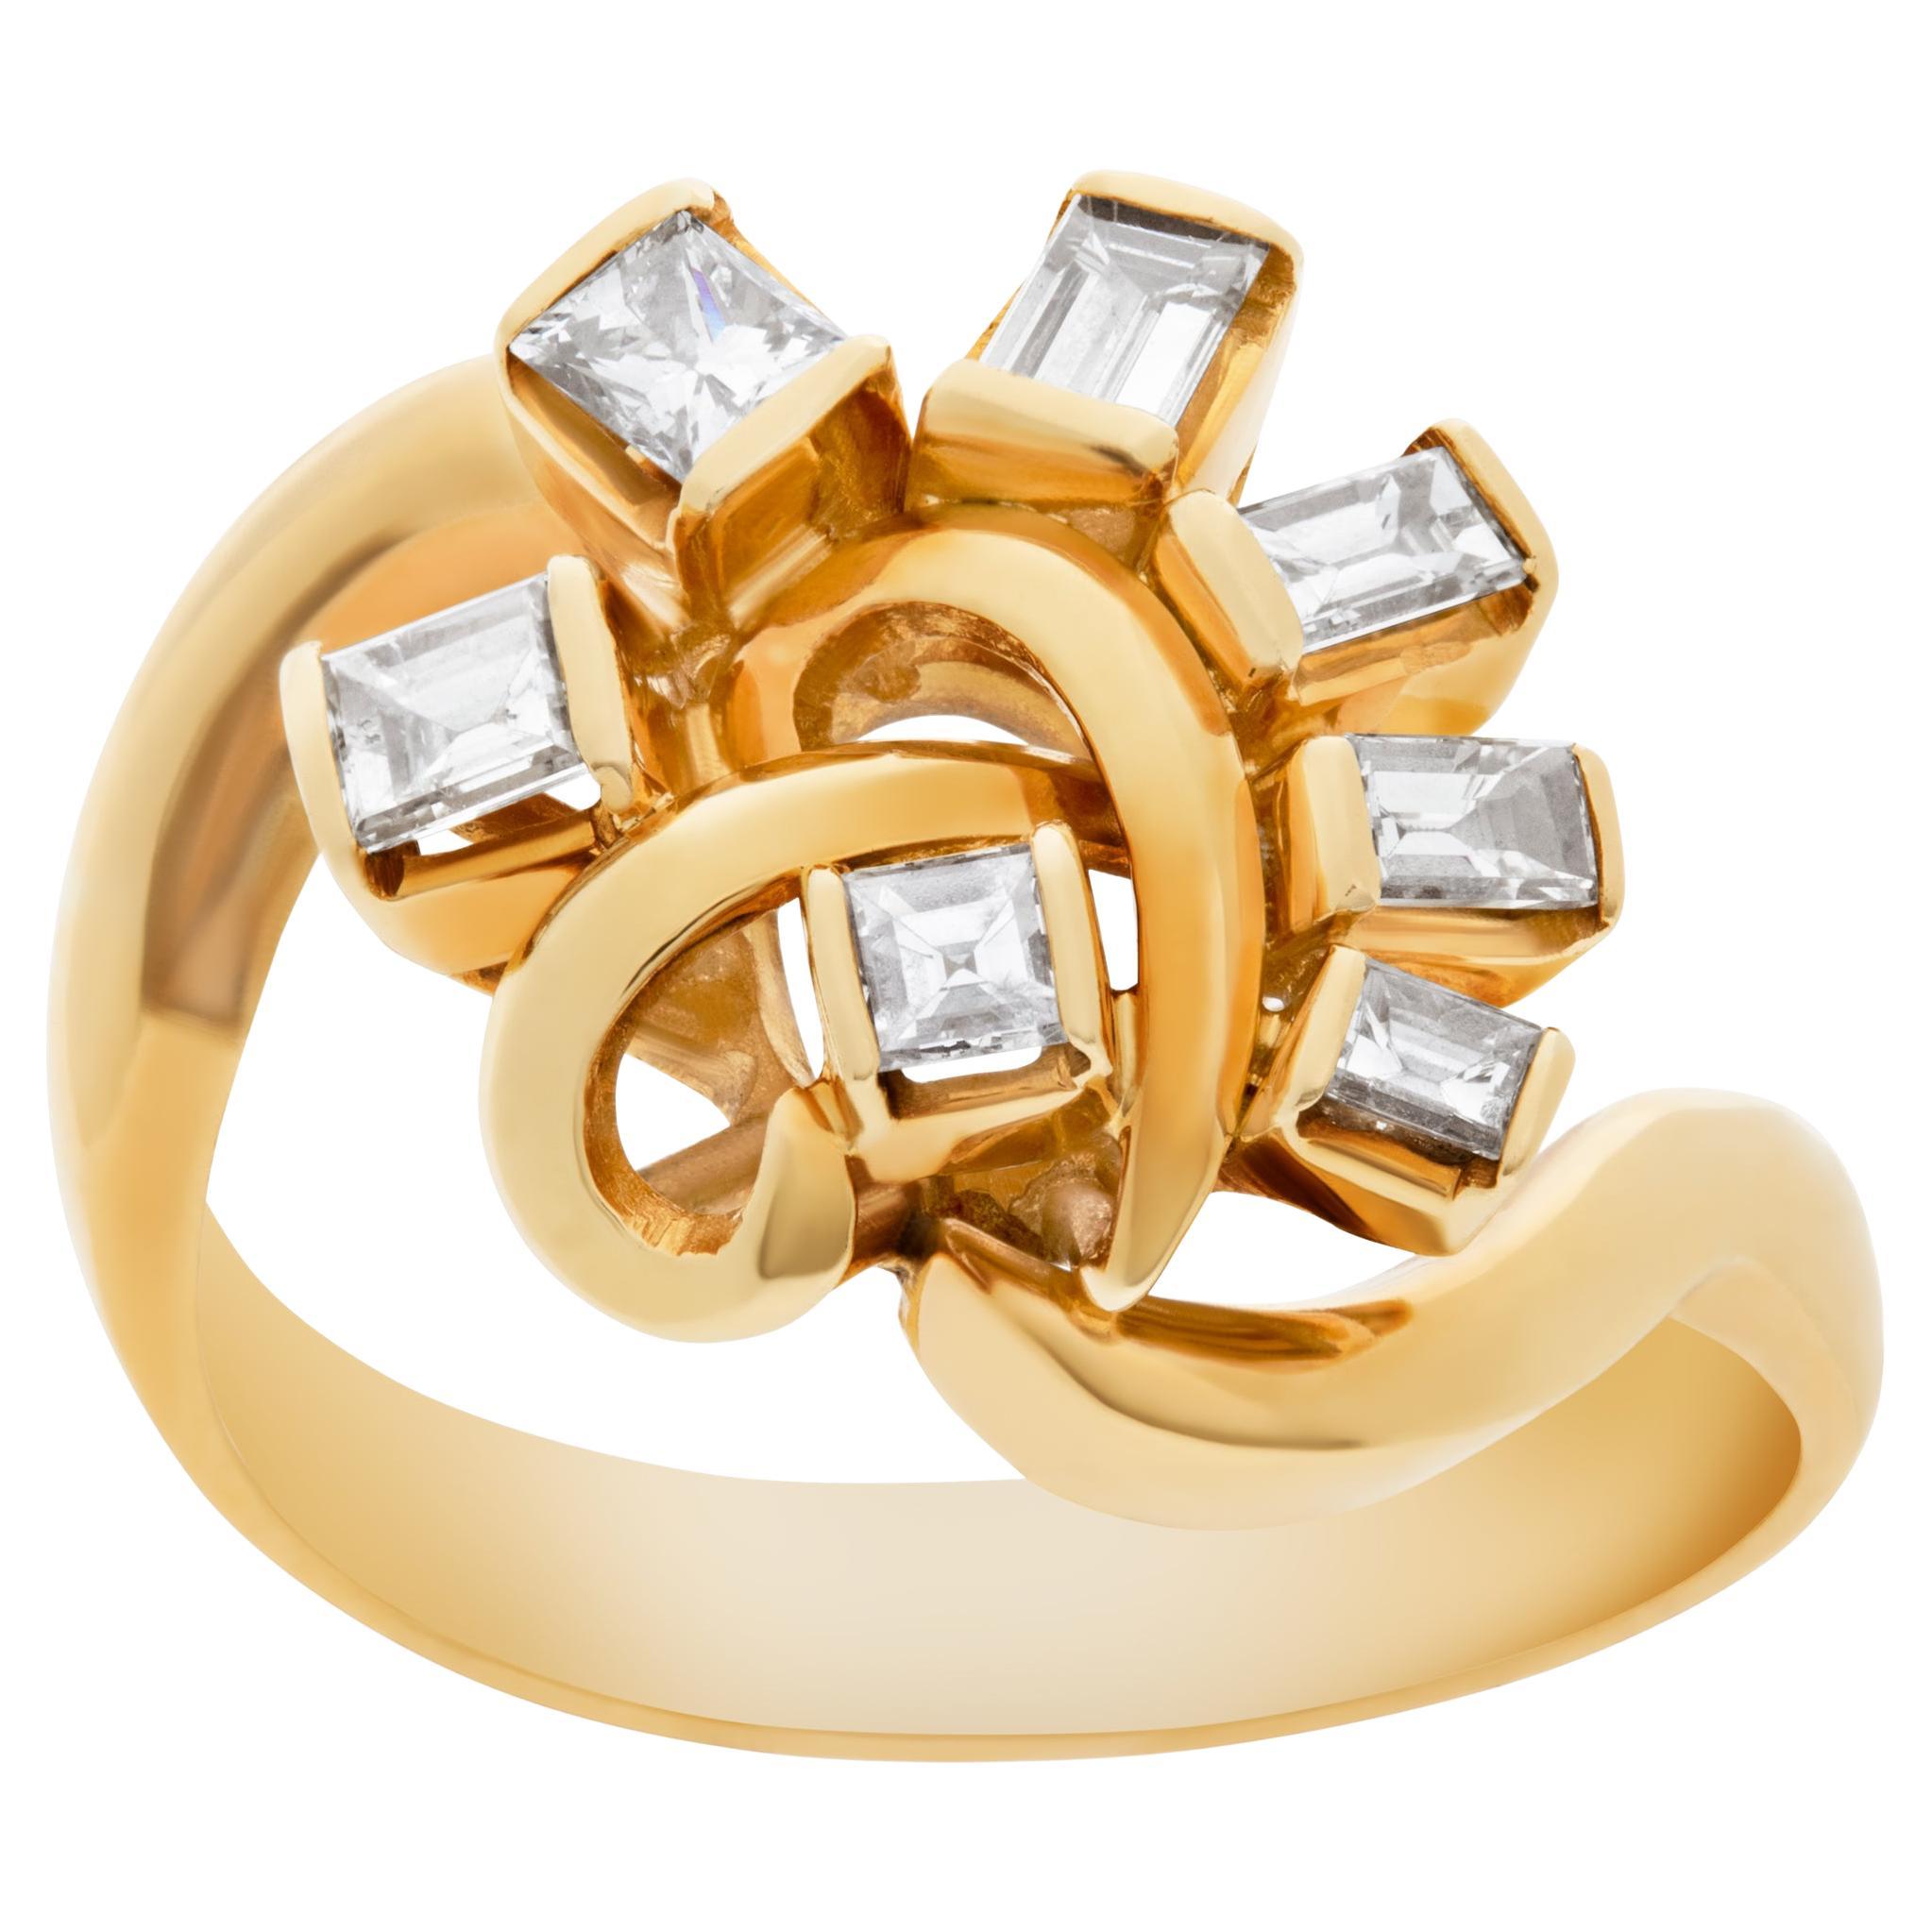 Wirbelring mit Diamanten in 18 Karat Gelbgold gefasst